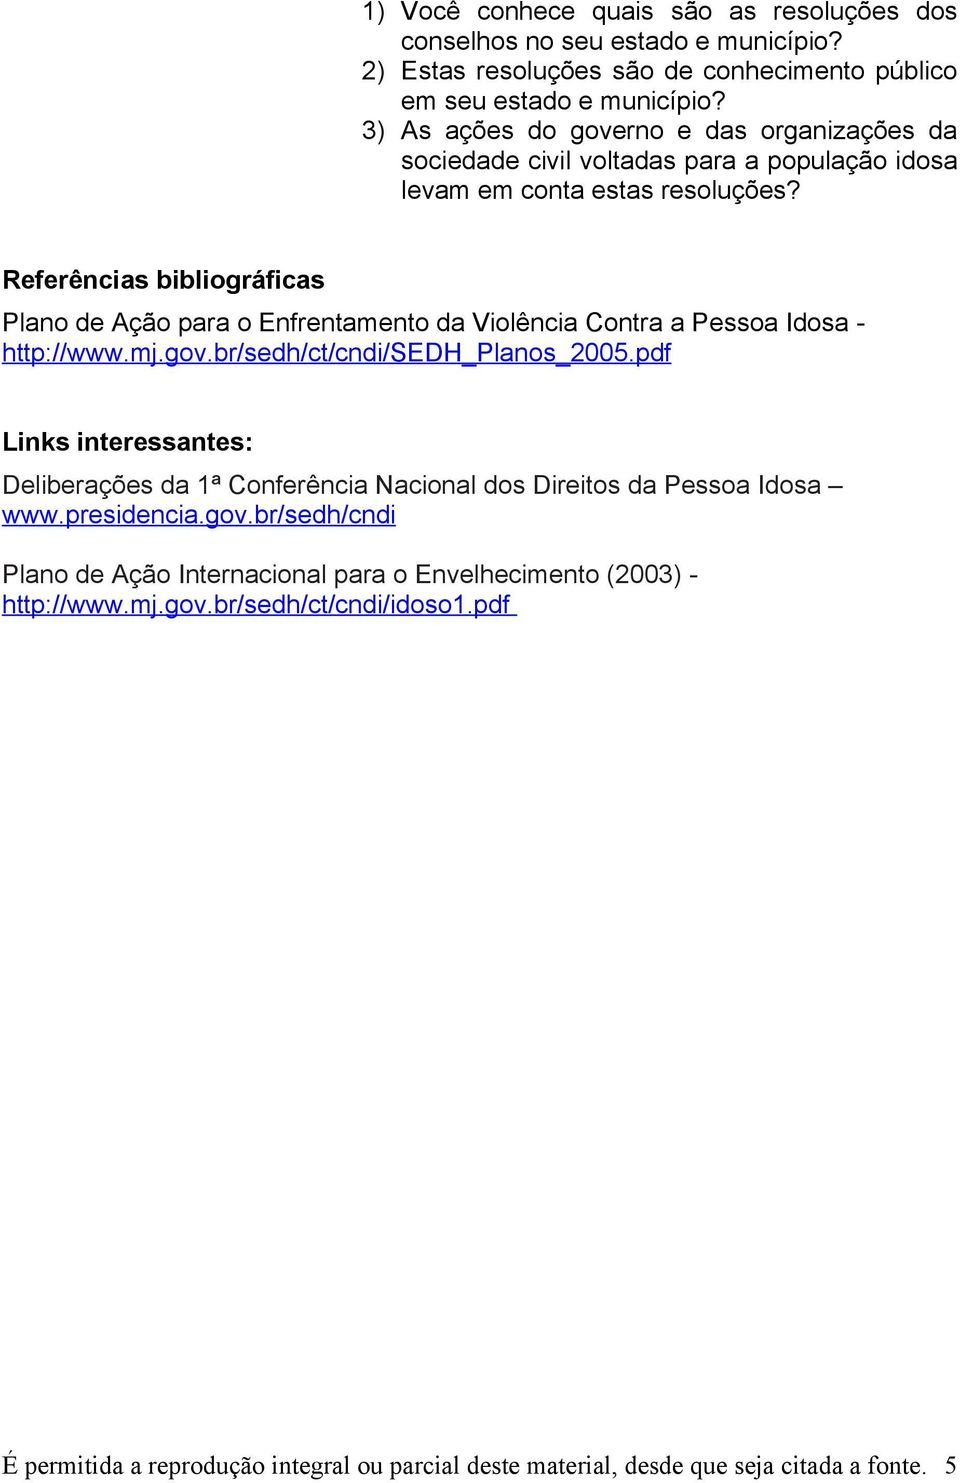 Referências bibliográficas Plano de Ação para o Enfrentamento da Violência Contra a Pessoa Idosa - http://www.mj.gov.br/sedh/ct/cndi/sedh_planos_2005.